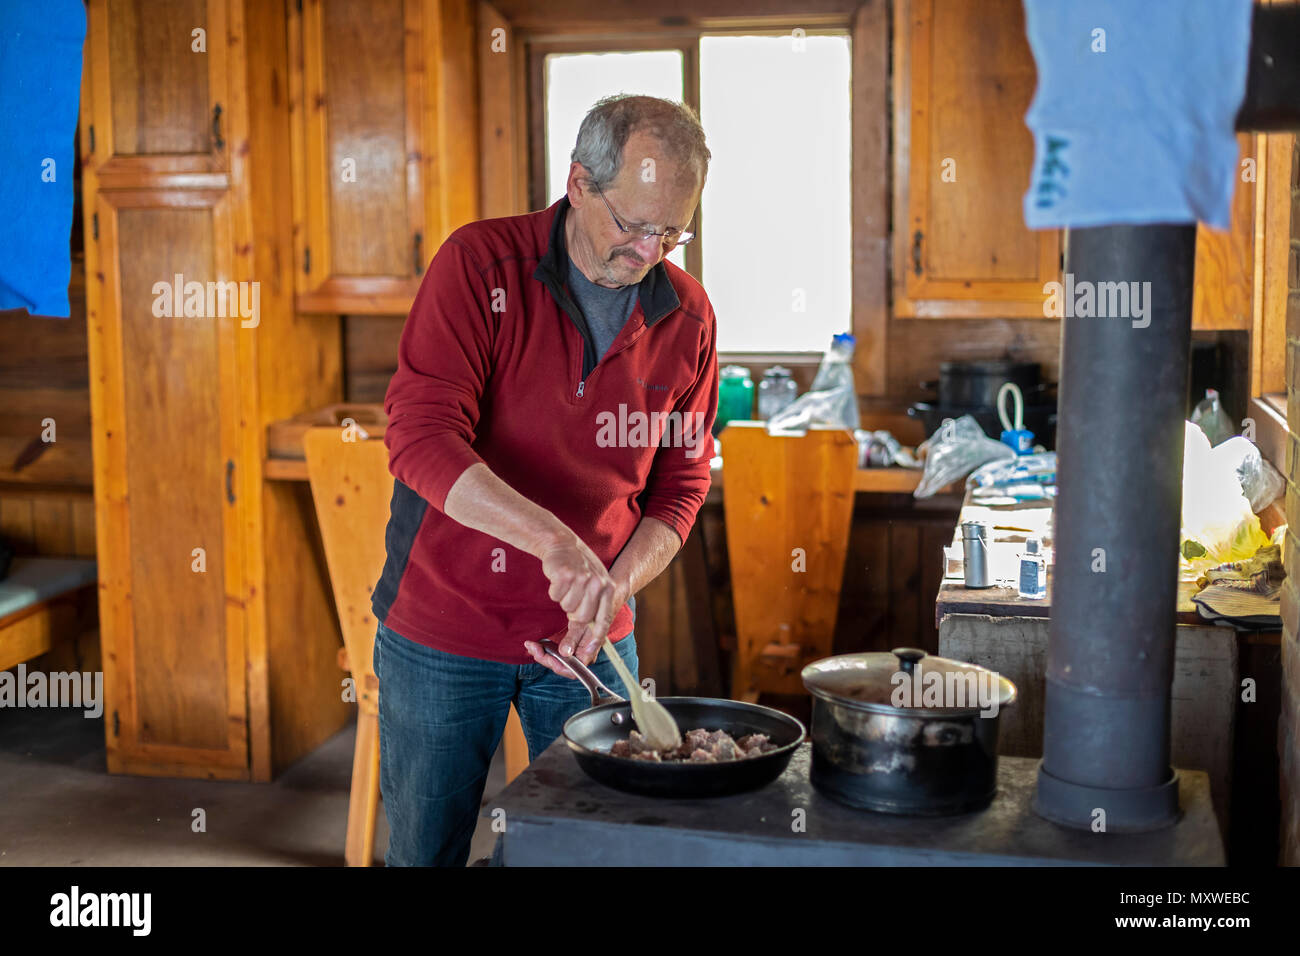 Ontonagon, Michigan - John West cuisiniers dîner sur un poêle à bois dans une cabane dans les montagnes Porcupine Wilderness State Park. Le parc maintient Banque D'Images